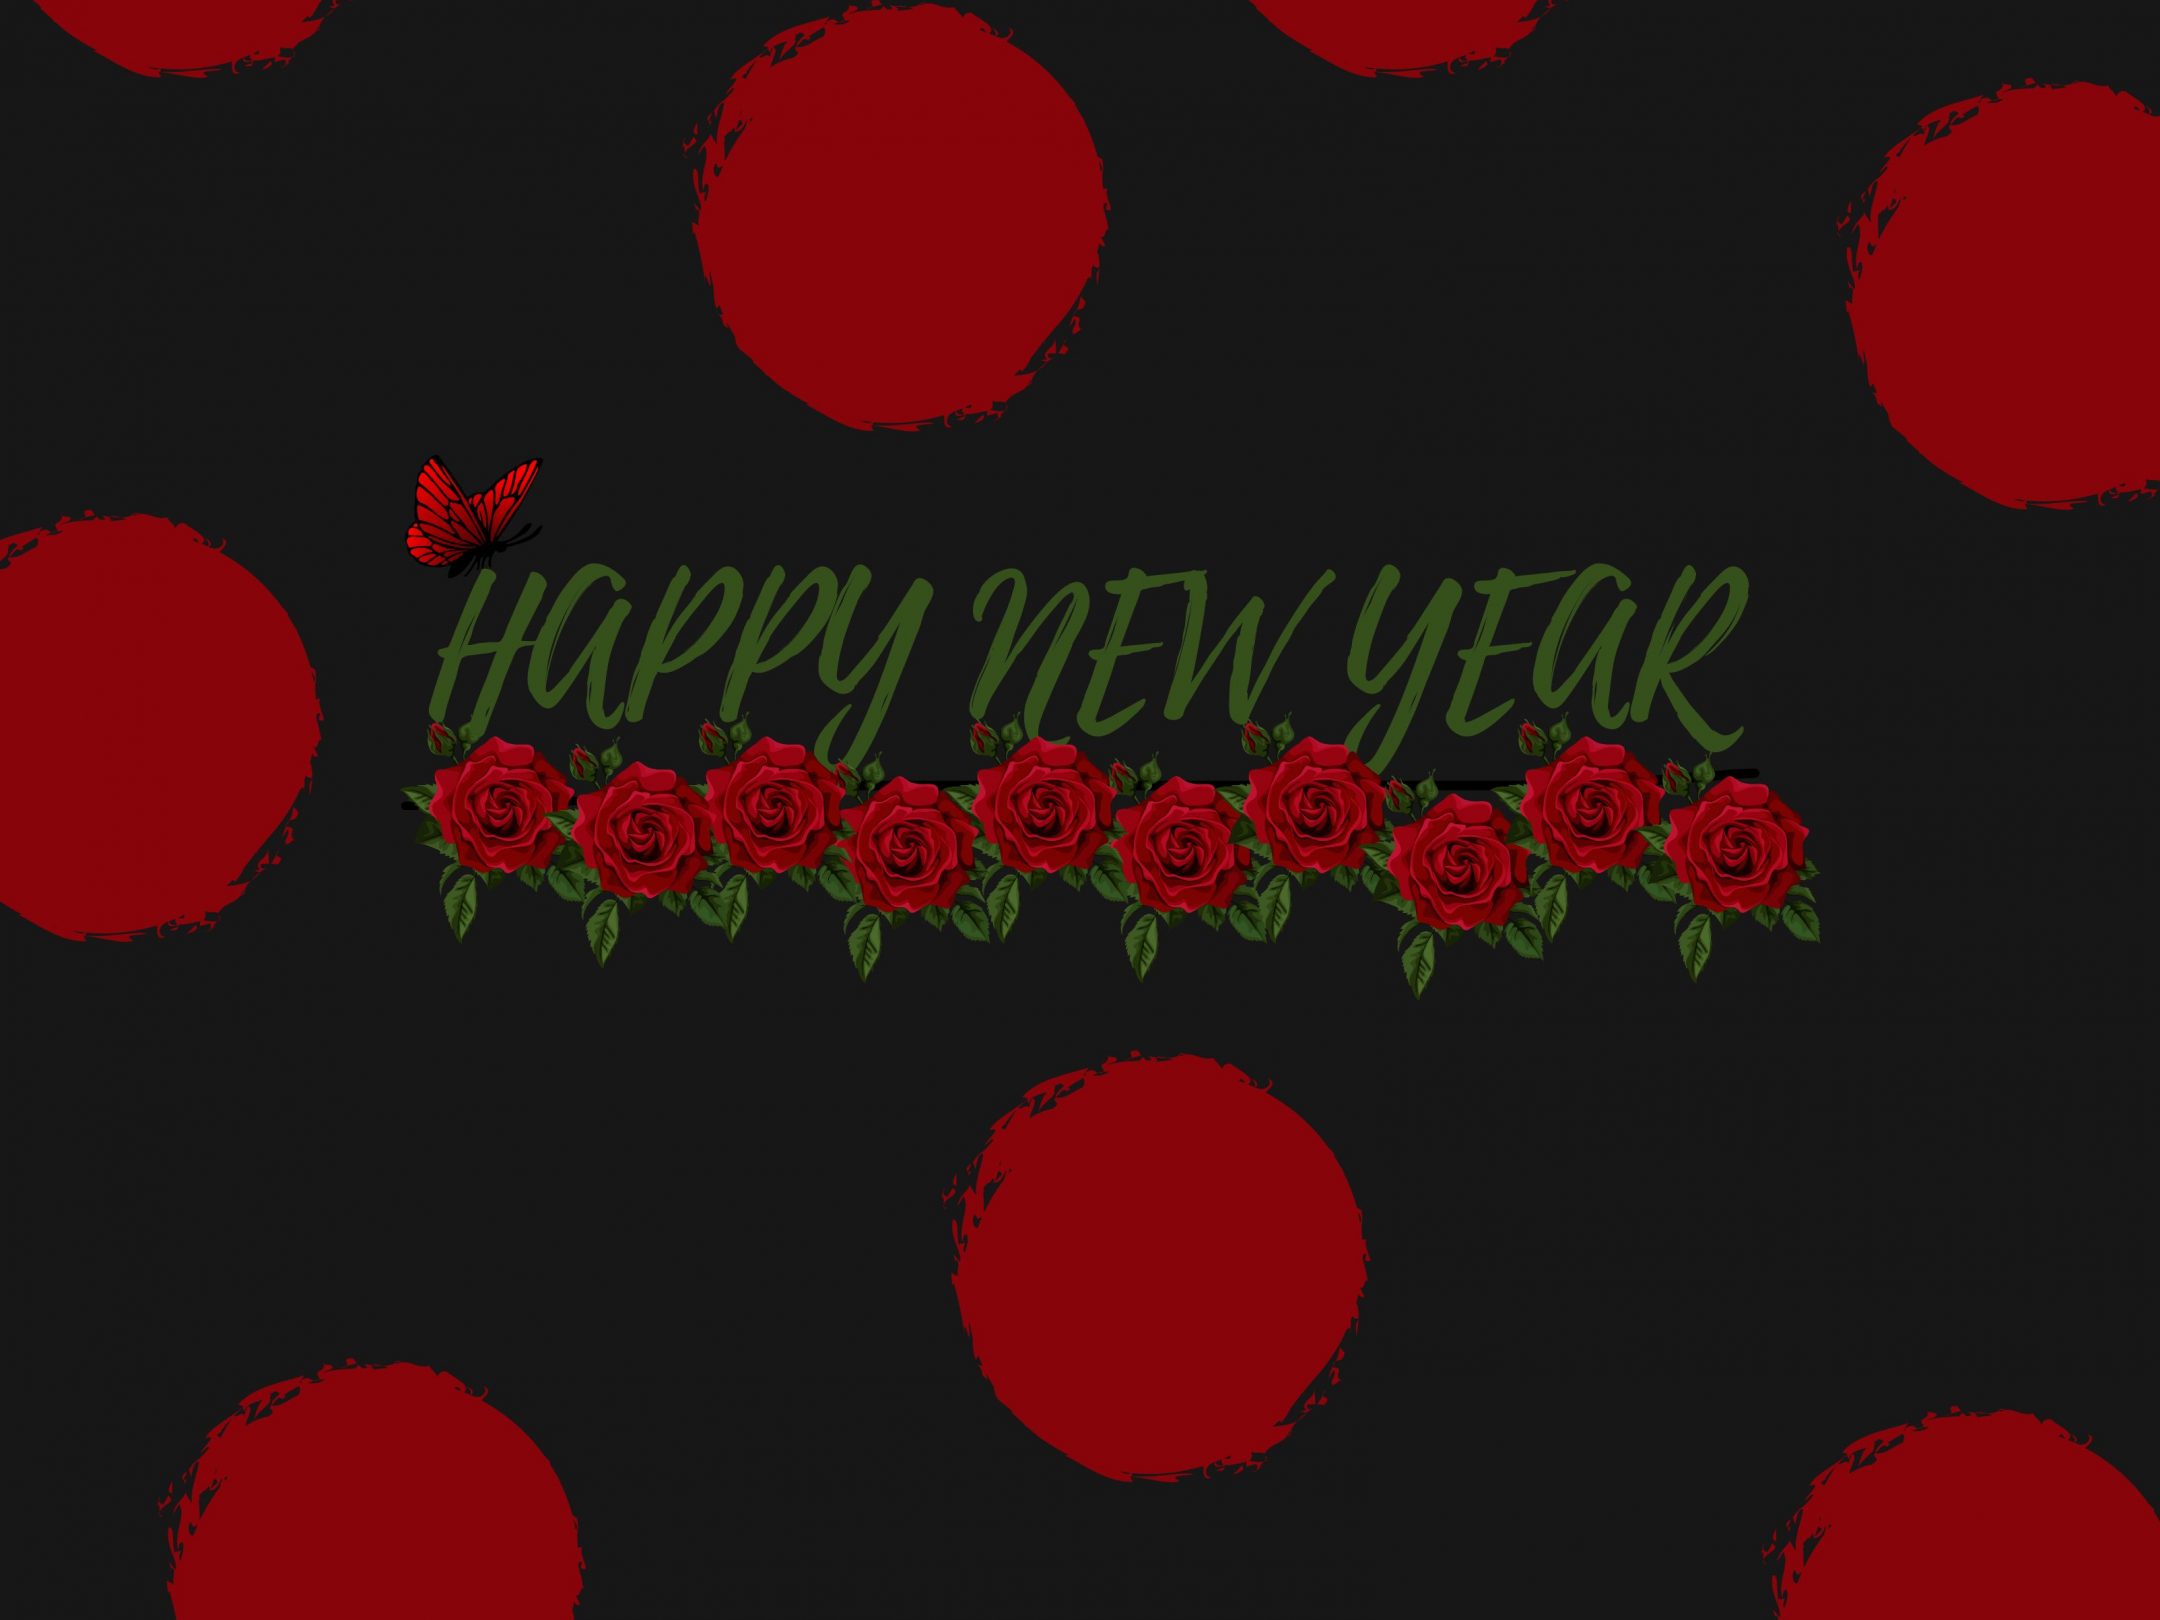 2160x1620 iPad wallpaper 4k Red Poka Dot New Year Ipad Wallpaper 2160x1620 pixels resolution